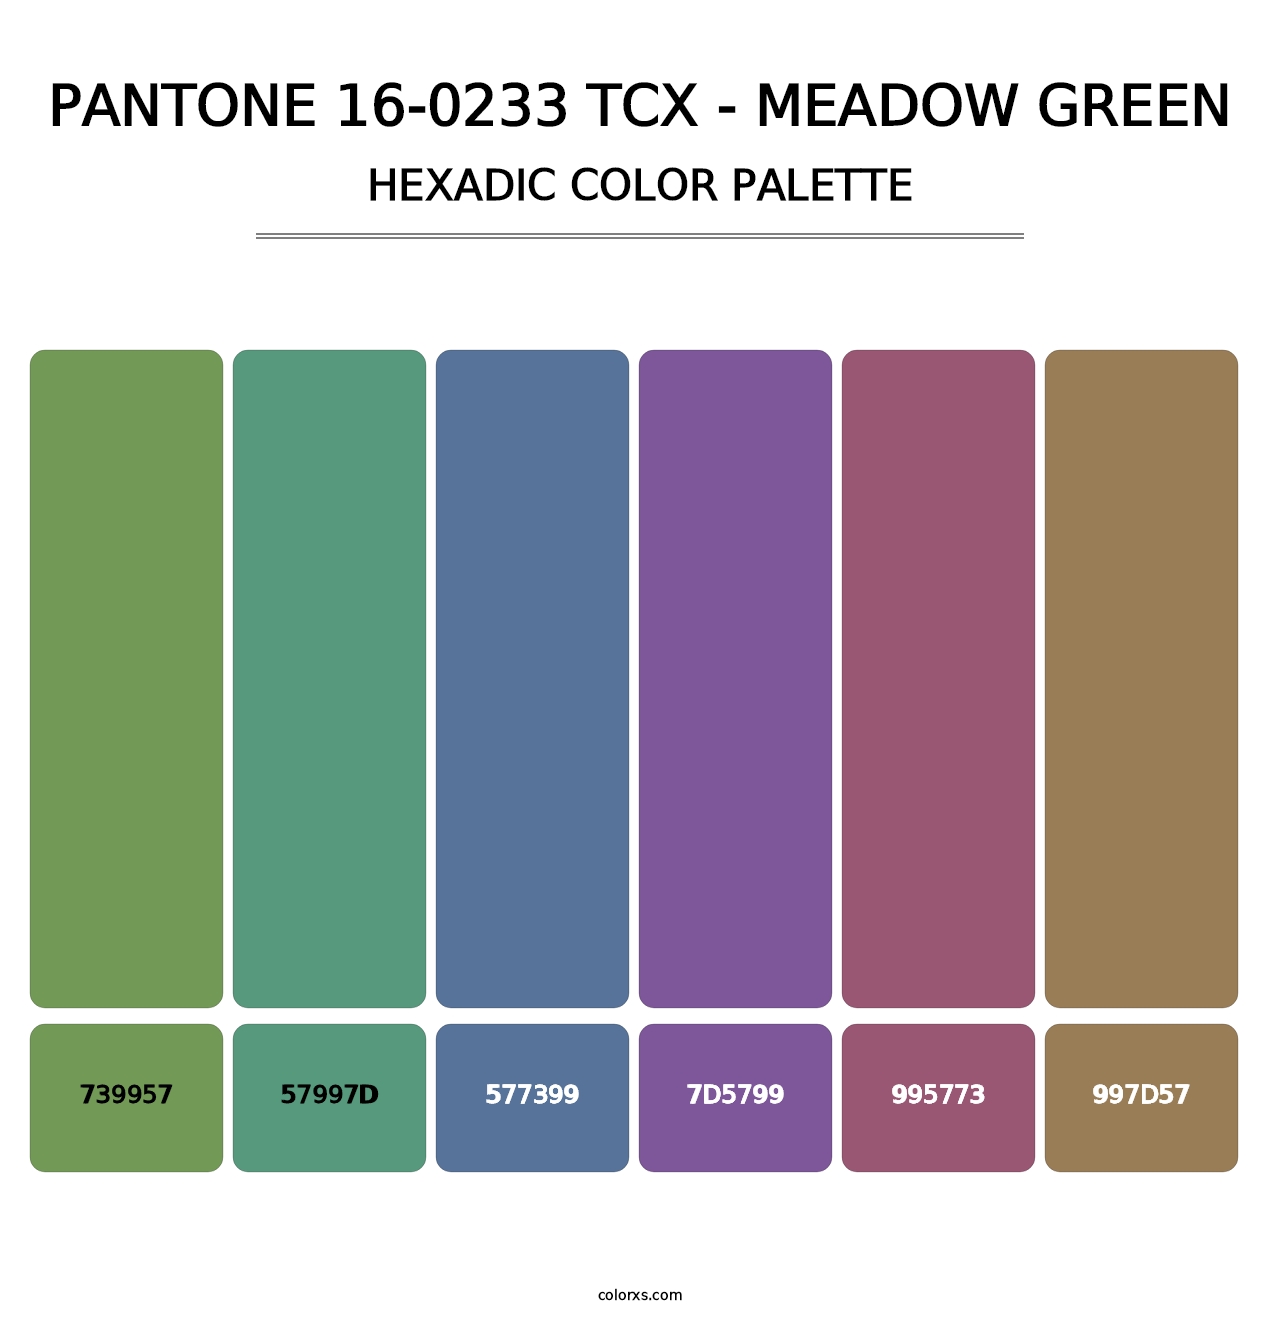 PANTONE 16-0233 TCX - Meadow Green - Hexadic Color Palette